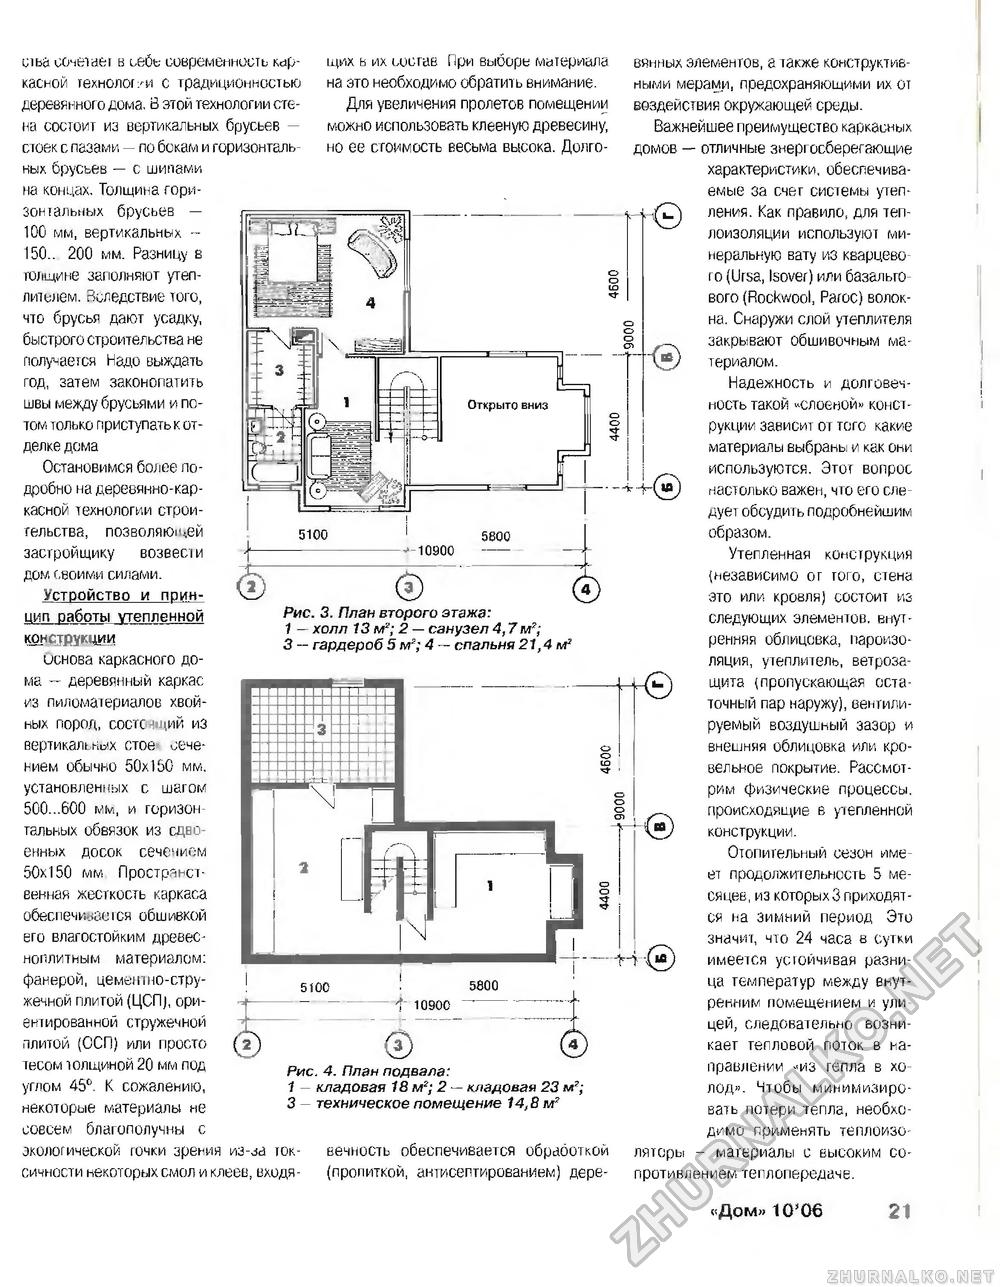 Дом 2006-10, страница 21